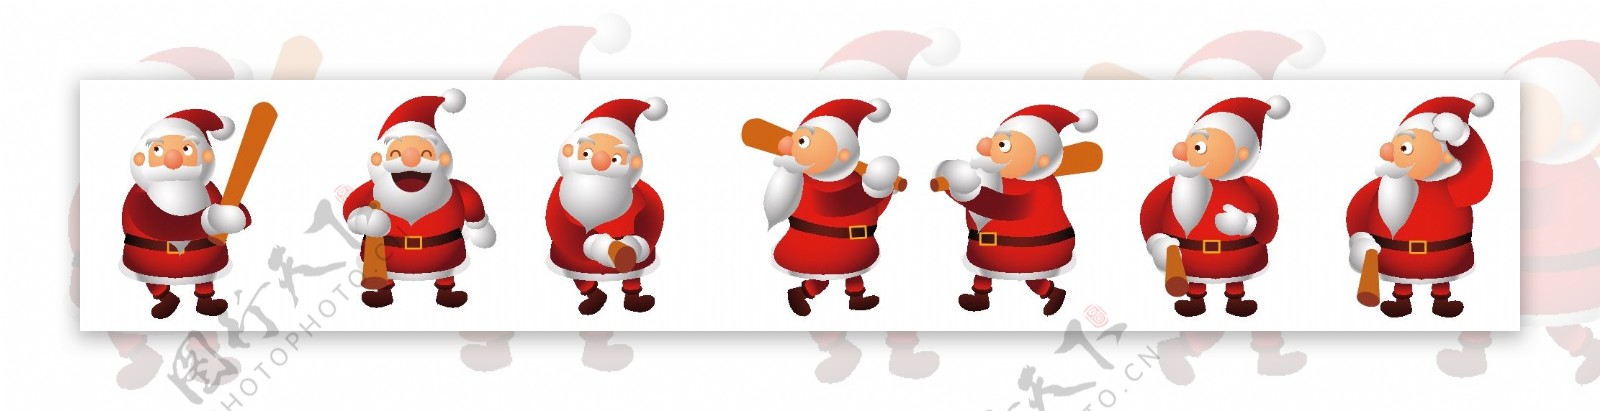 2016新年圣诞老人游戏H5海报矢量下载